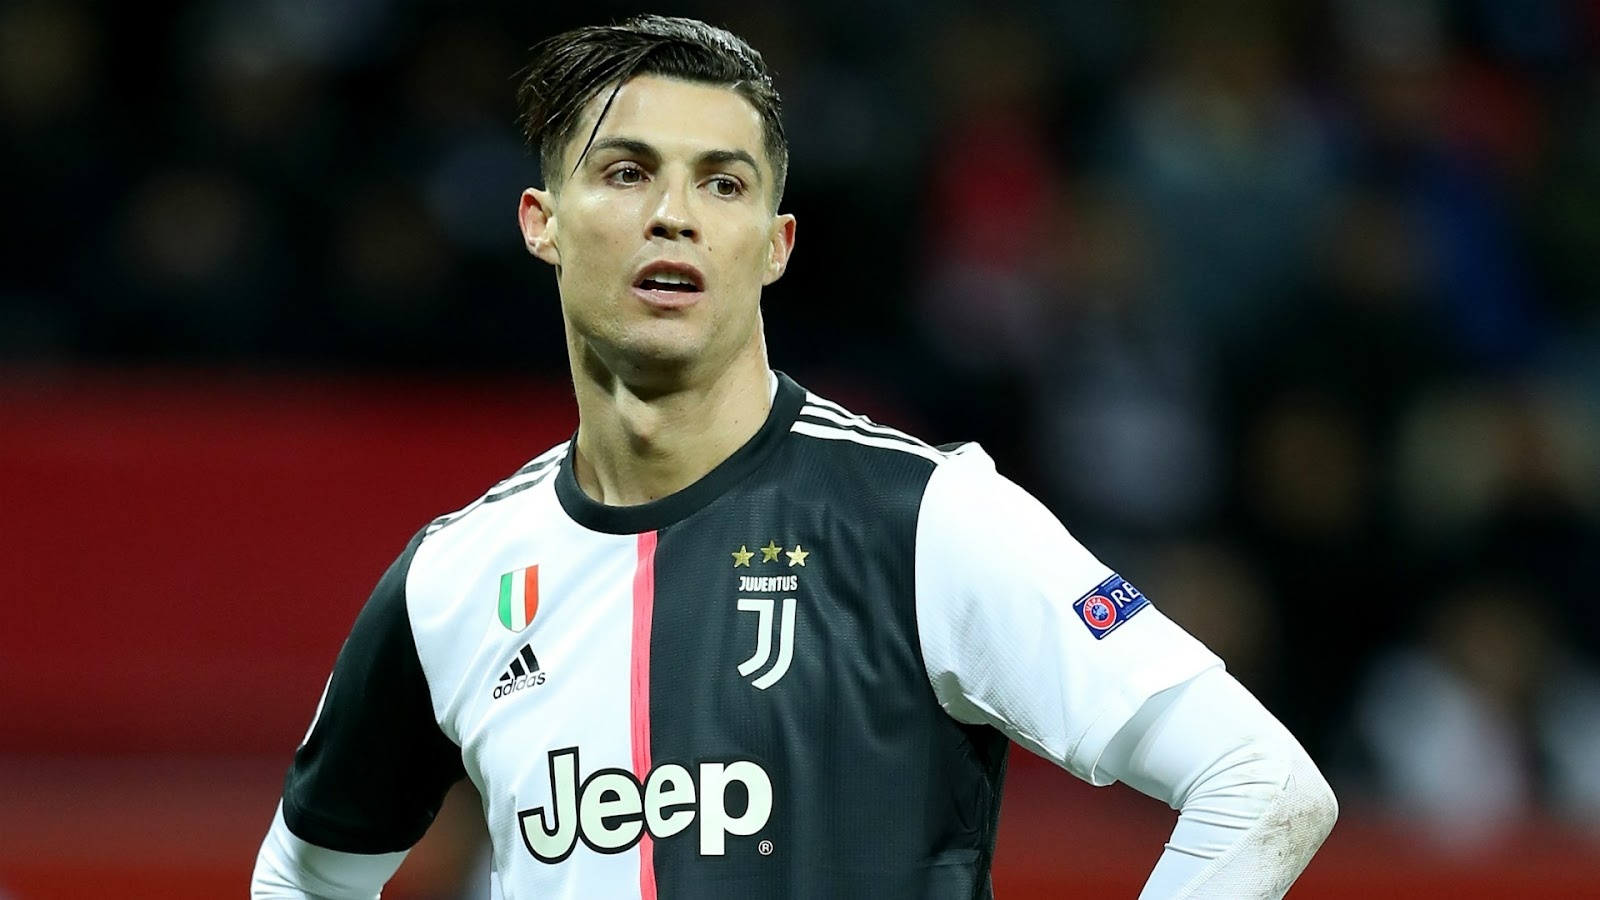 Cầu thủ xuất sắc nhất Juventus | Top 7 huyền thoại Juventus